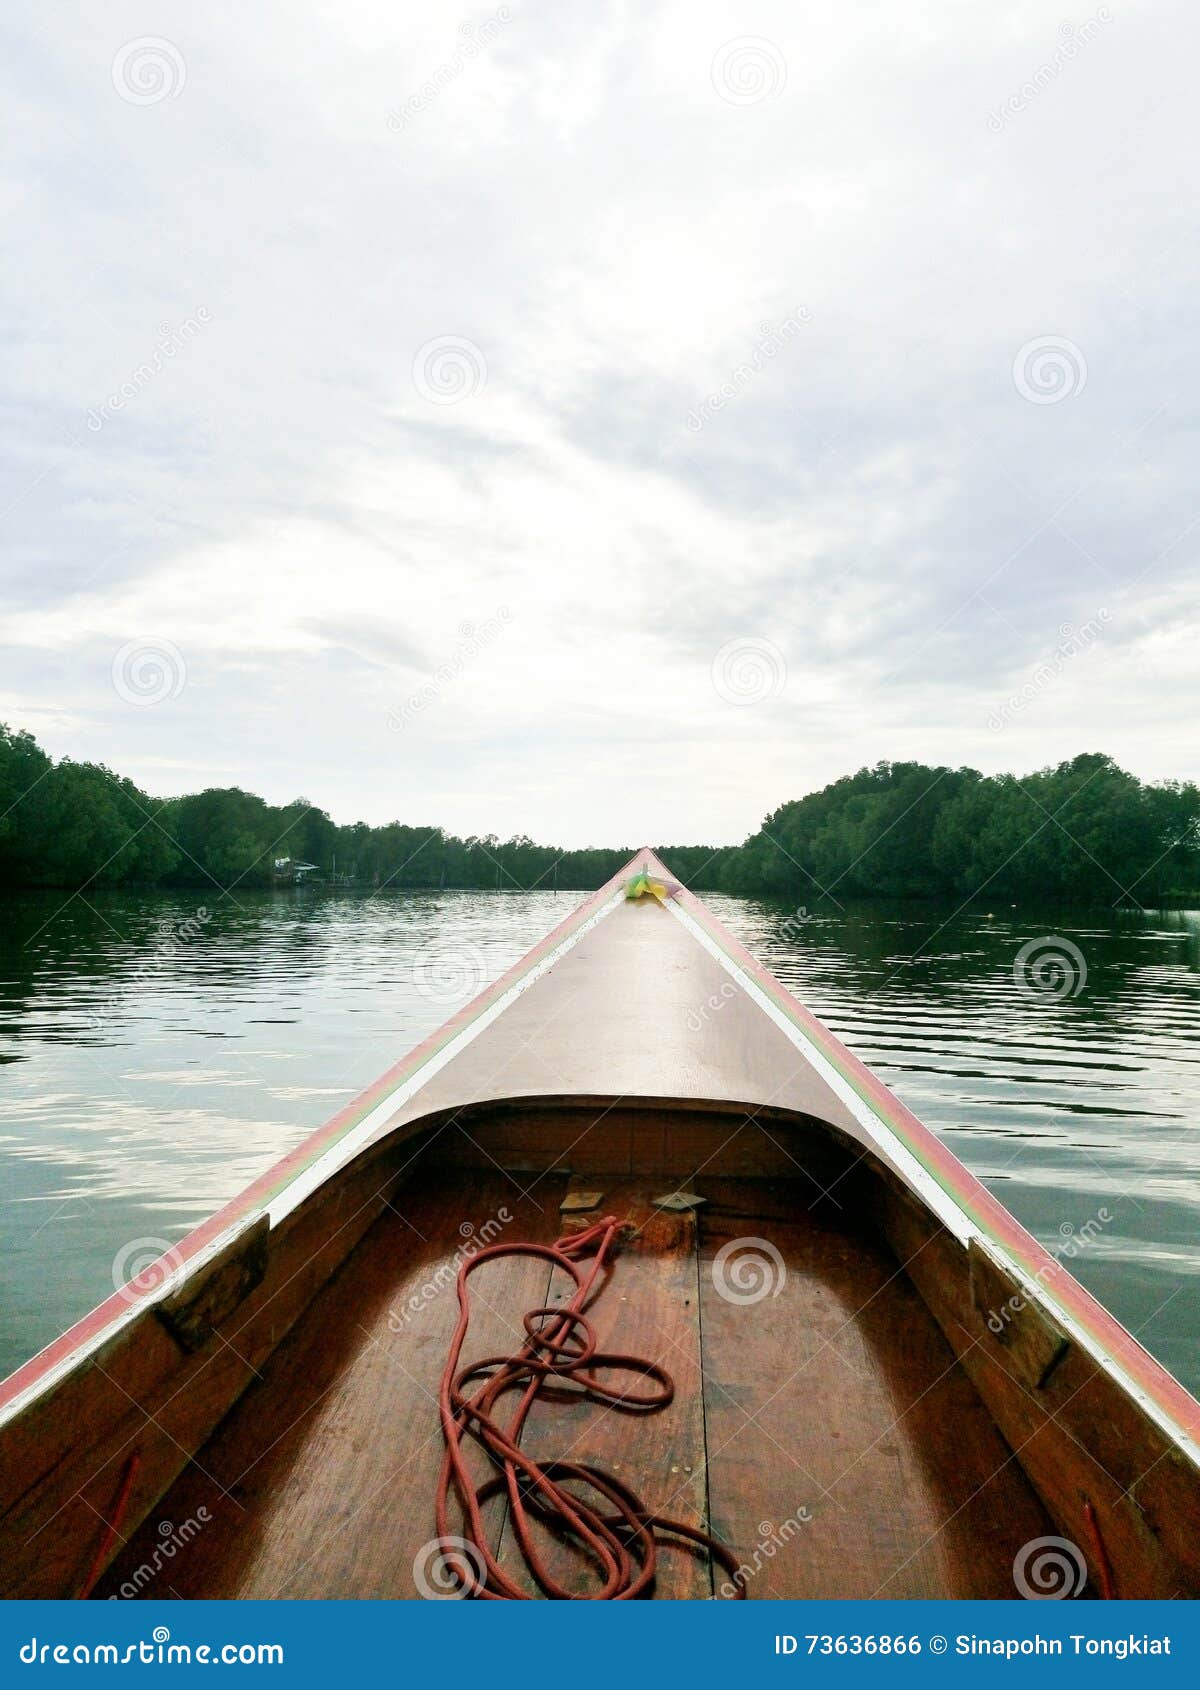 В rowboat. Деревянный rowboat в реке